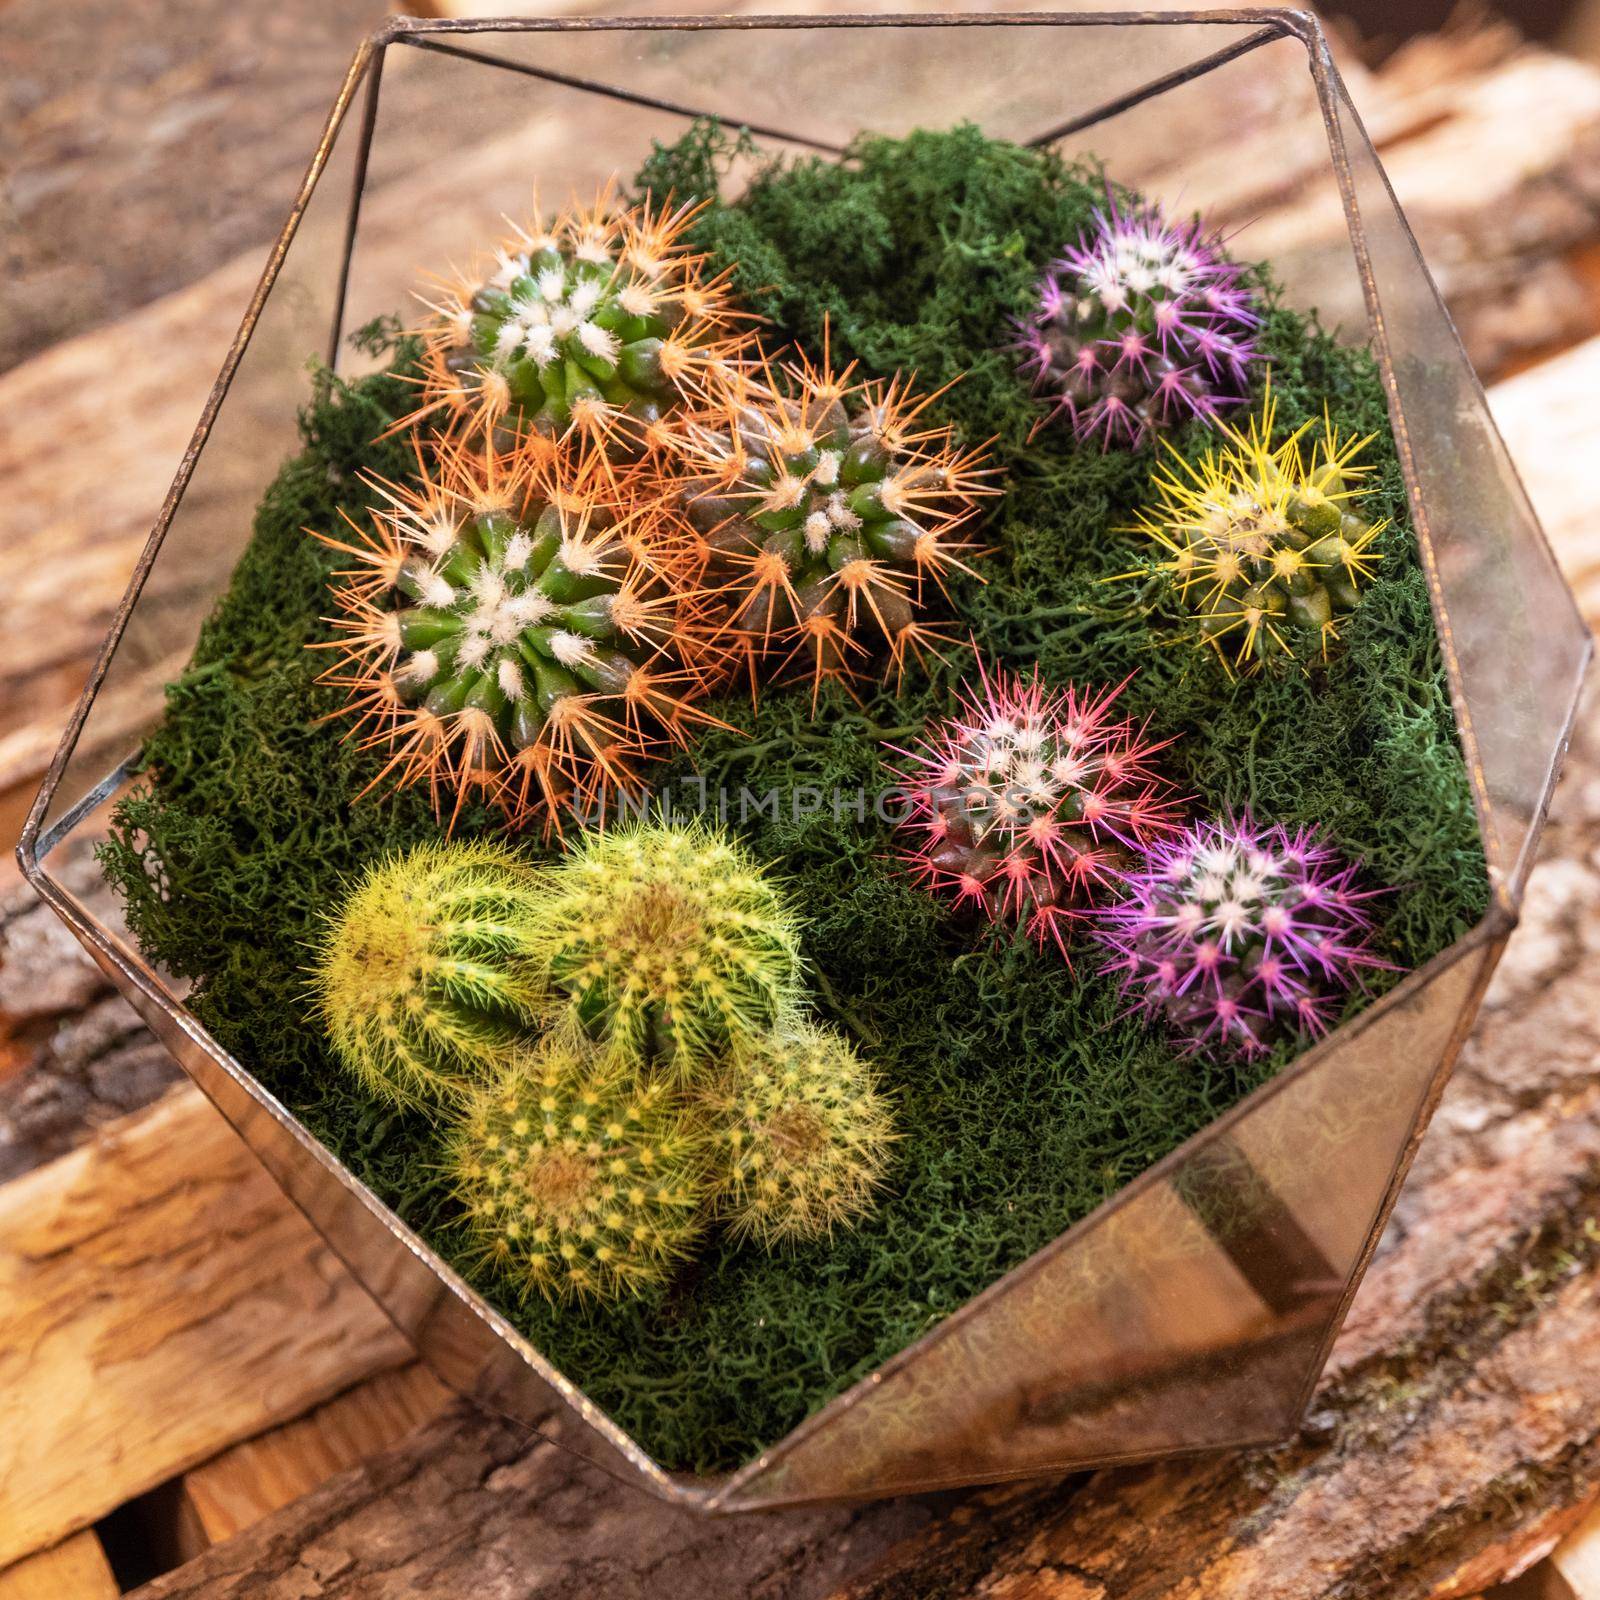 Terrarium plant with succulent, cactus in glass